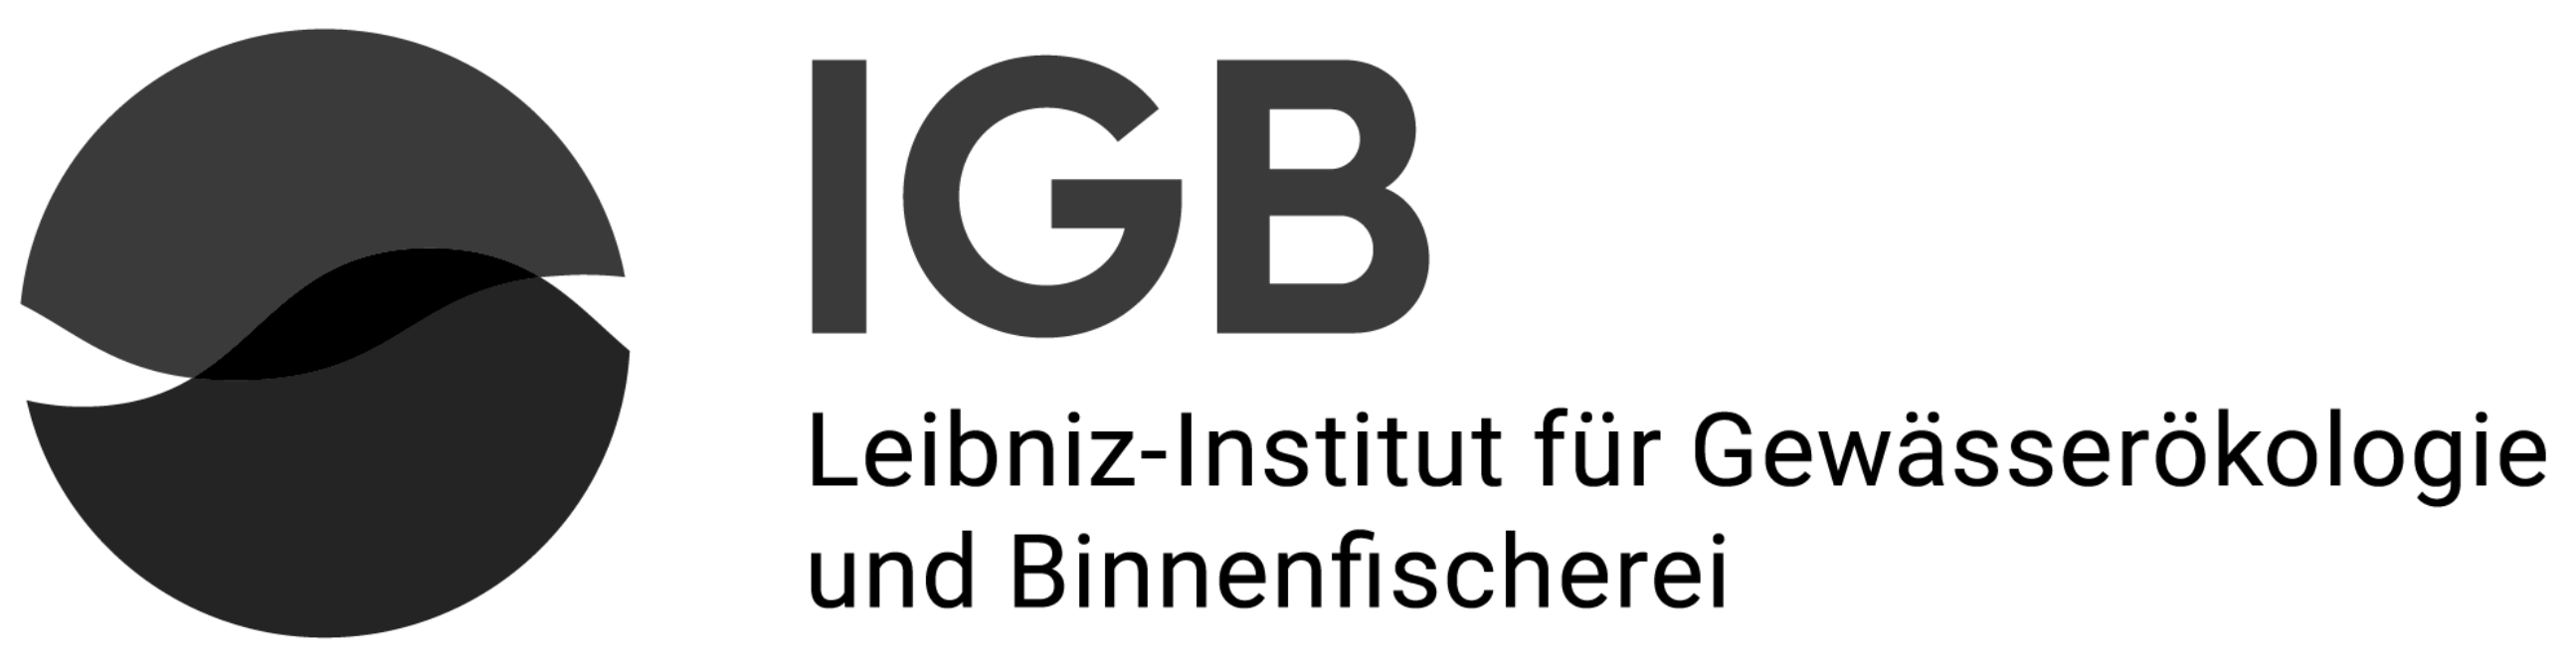 IGB-Logo-schwarz